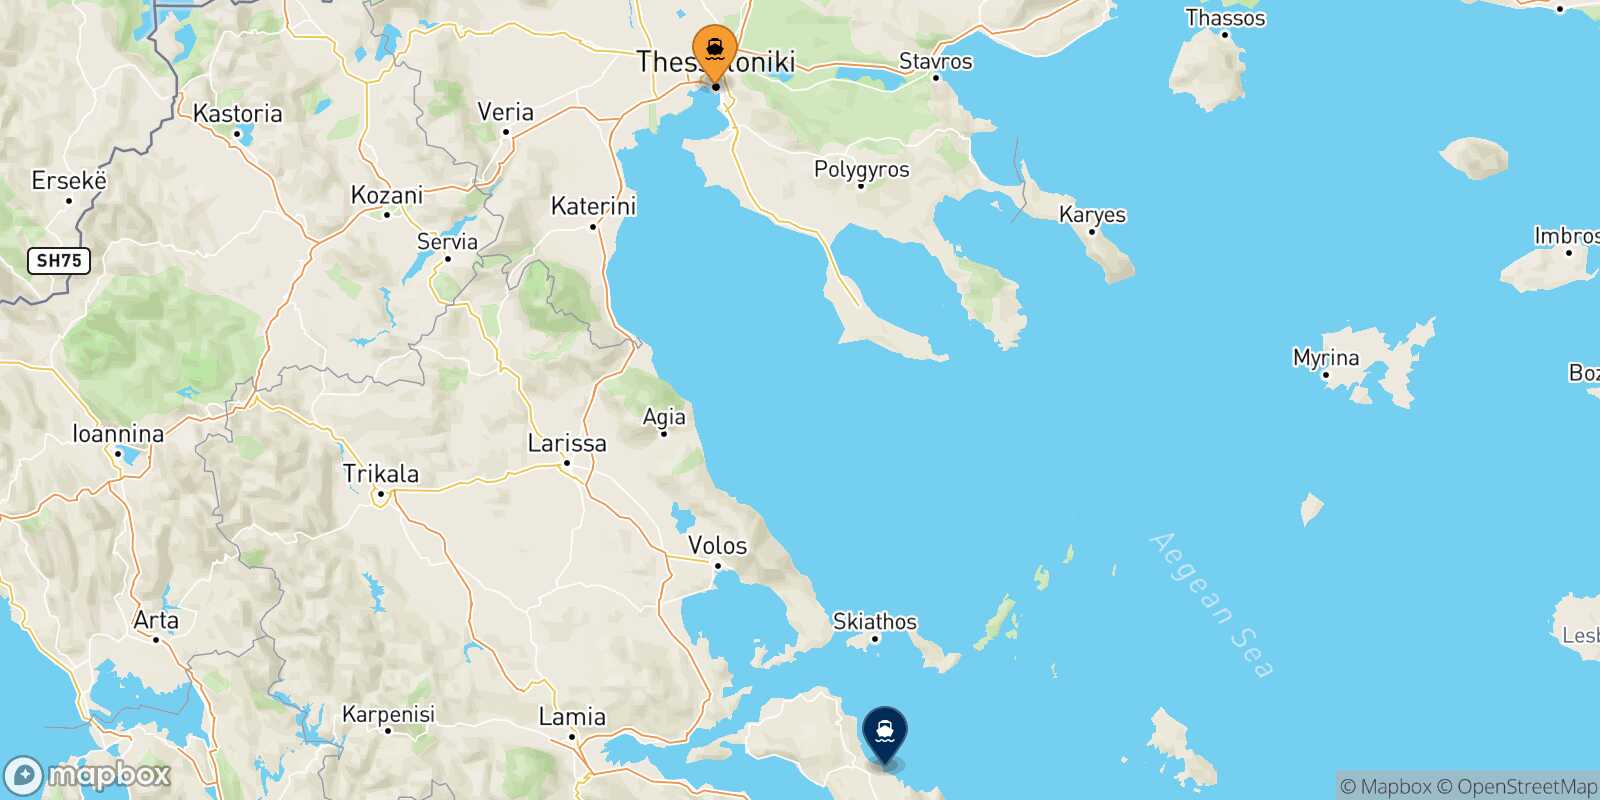 Thessaloniki Mantoudi (Evia) route map